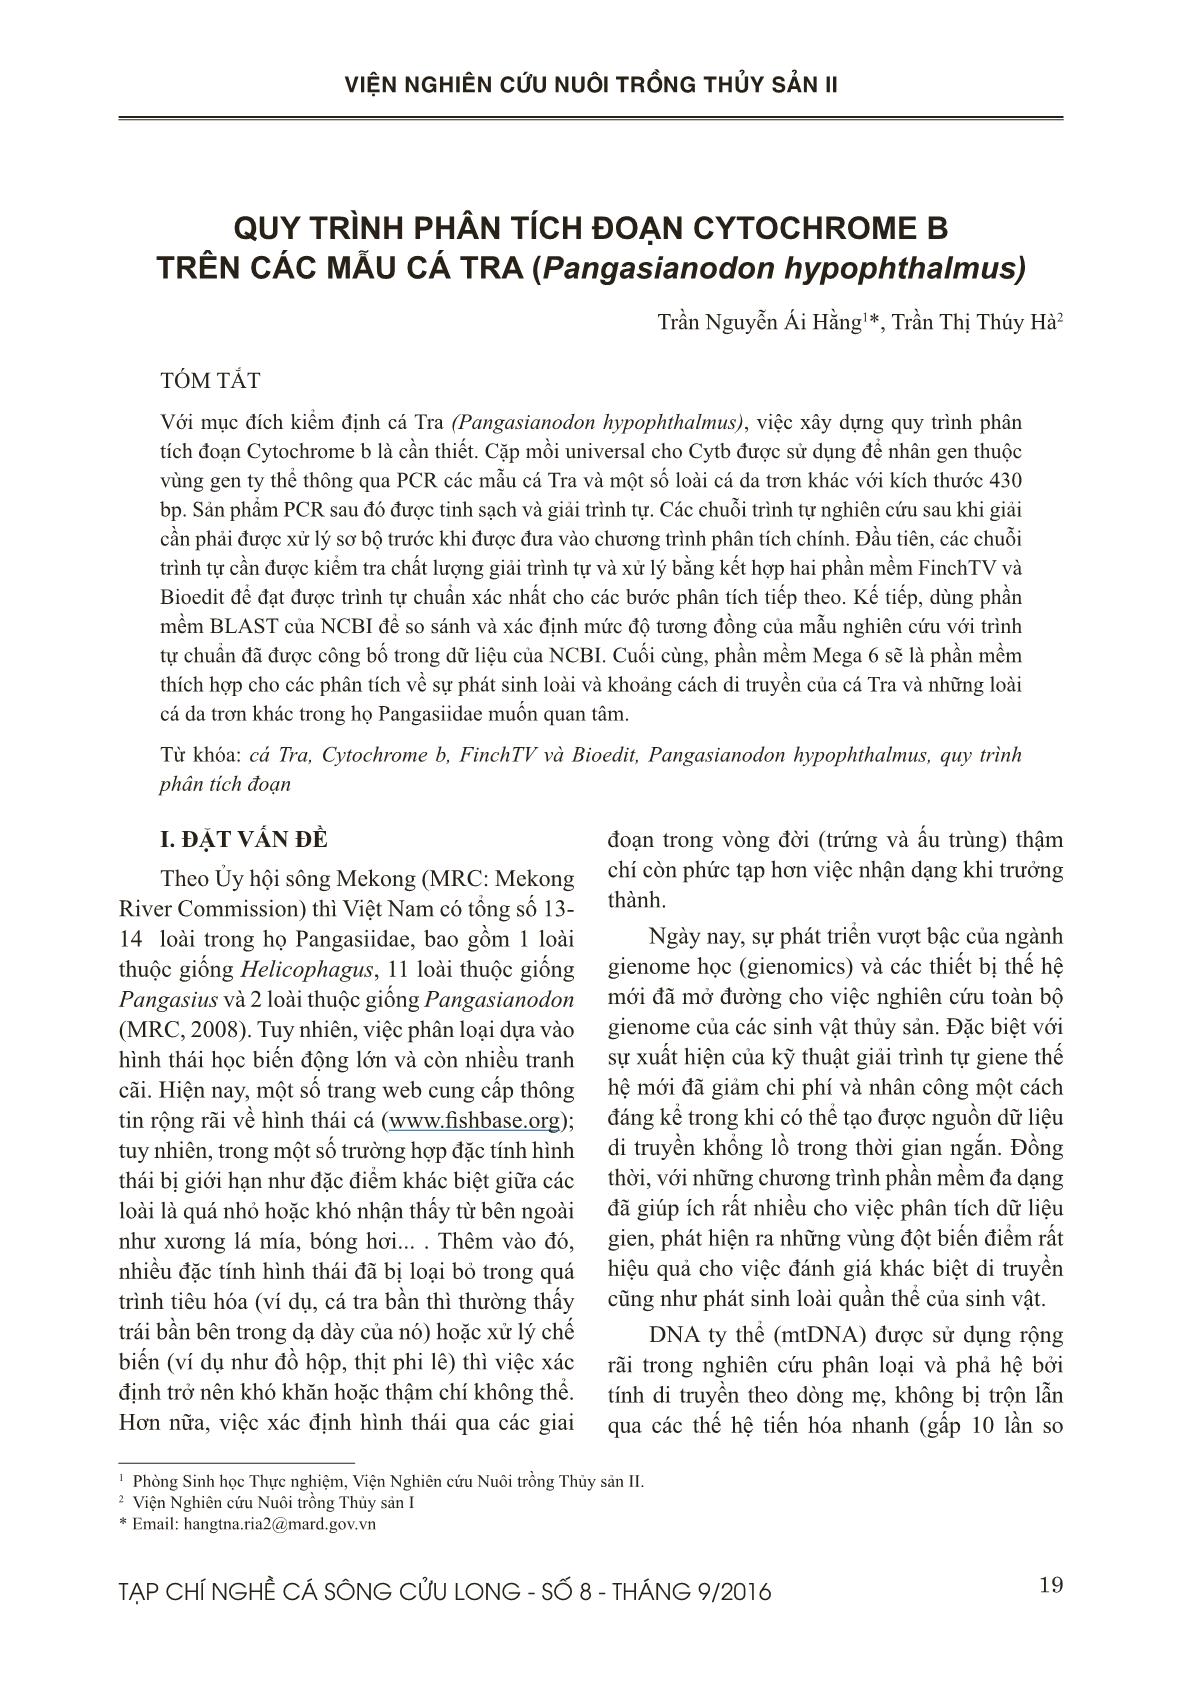 Quy trình phân tích đoạn cytochrome B trên các mẫu cá tra (Pangasianodon hypophthalmus) trang 1